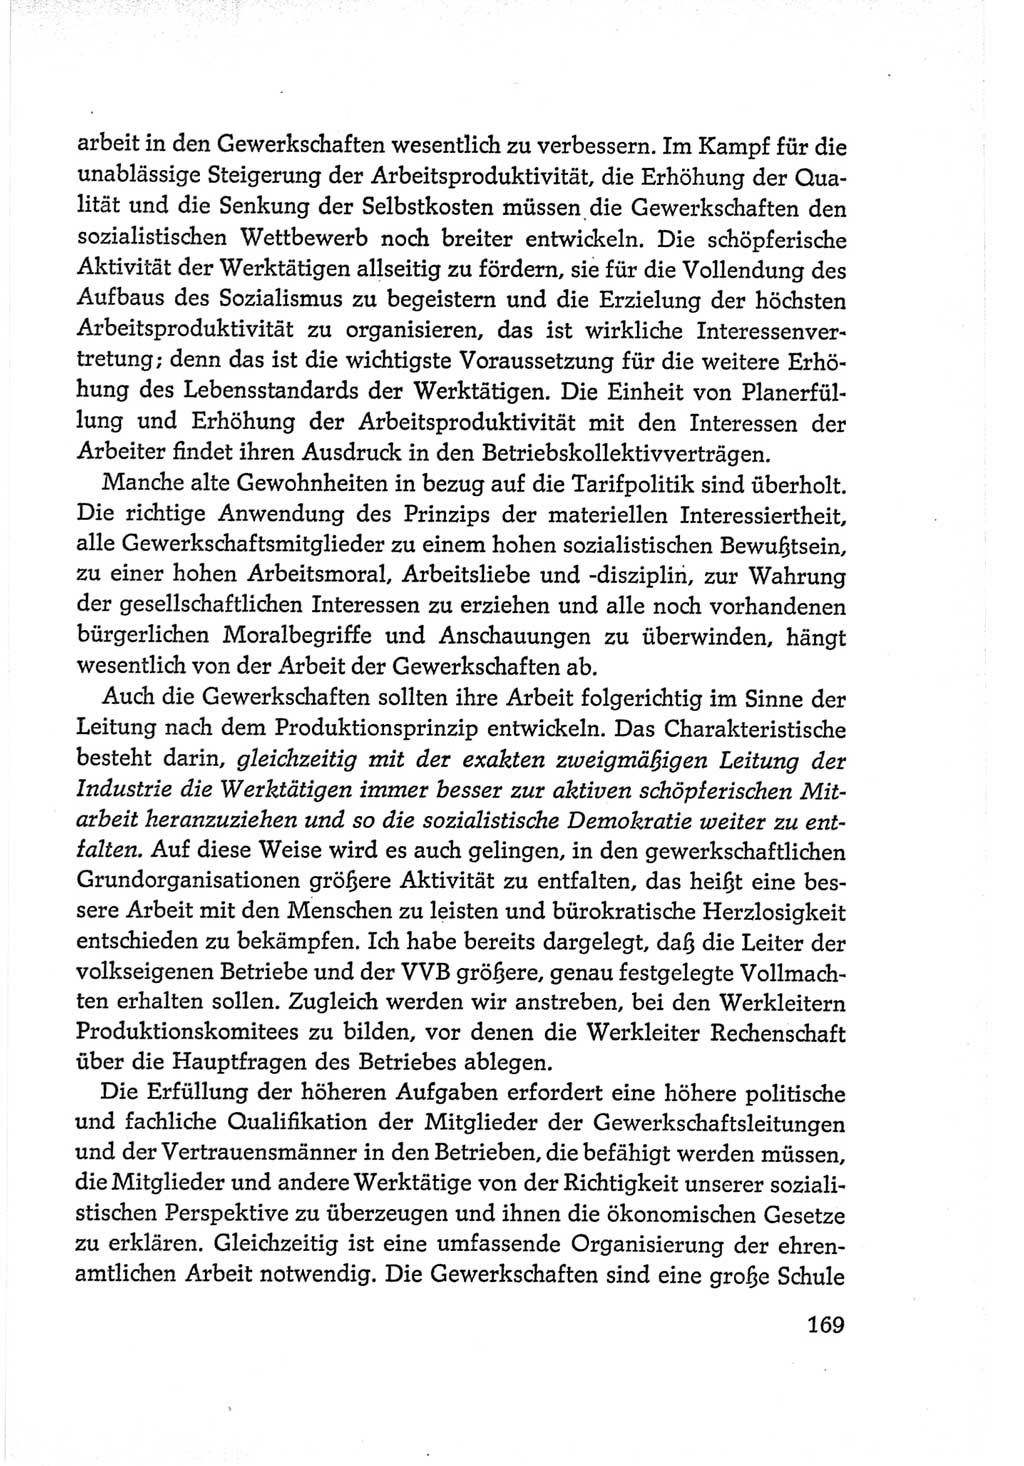 Protokoll der Verhandlungen des Ⅵ. Parteitages der Sozialistischen Einheitspartei Deutschlands (SED) [Deutsche Demokratische Republik (DDR)] 1963, Band Ⅰ, Seite 169 (Prot. Verh. Ⅵ. PT SED DDR 1963, Bd. Ⅰ, S. 169)